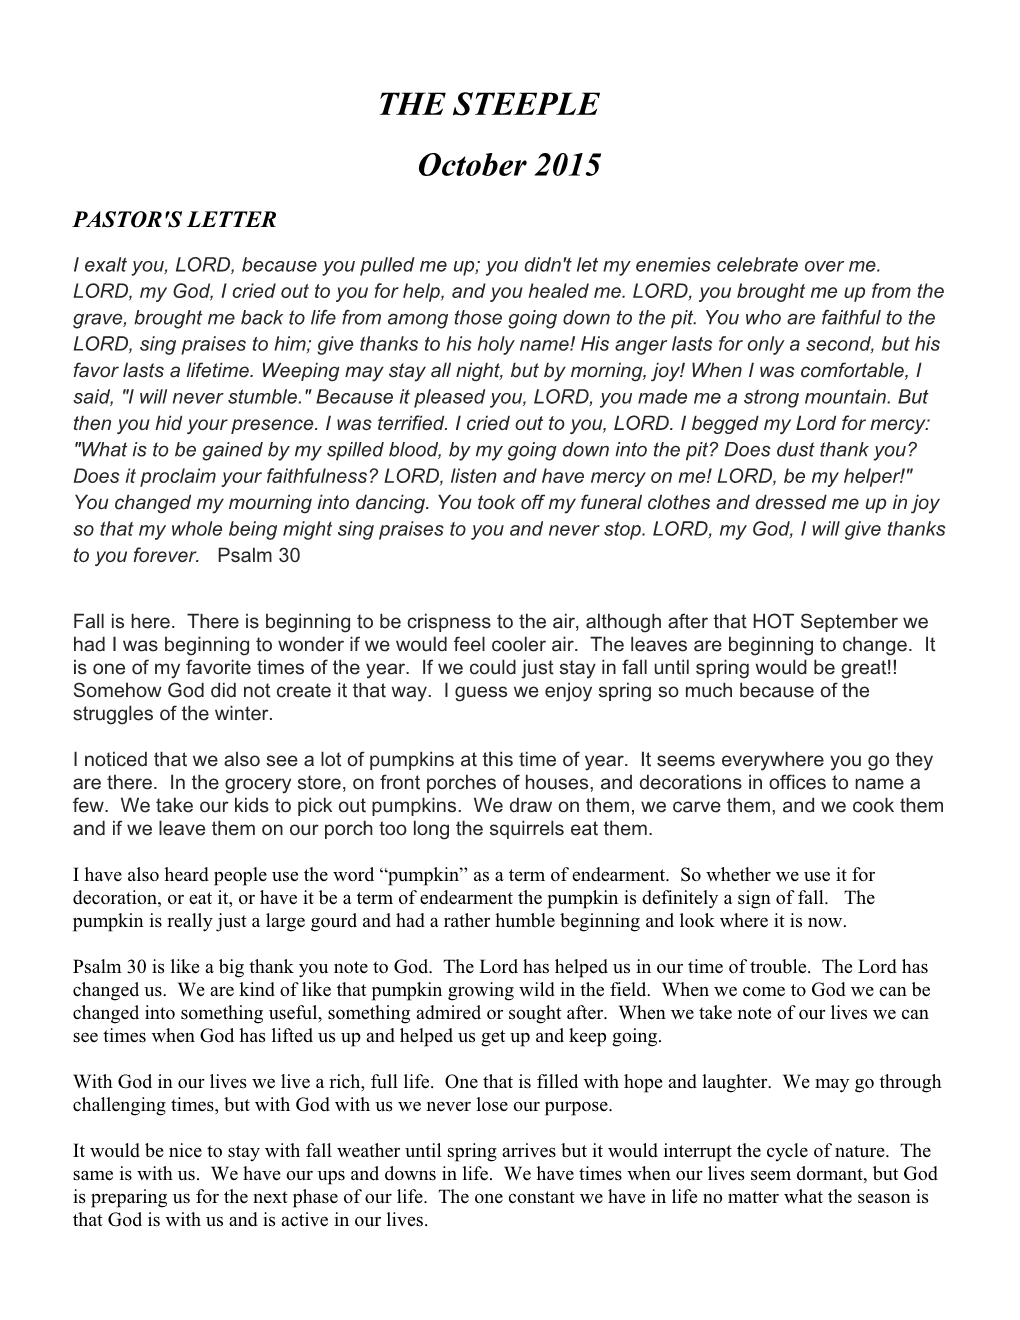 Pastor's Letter